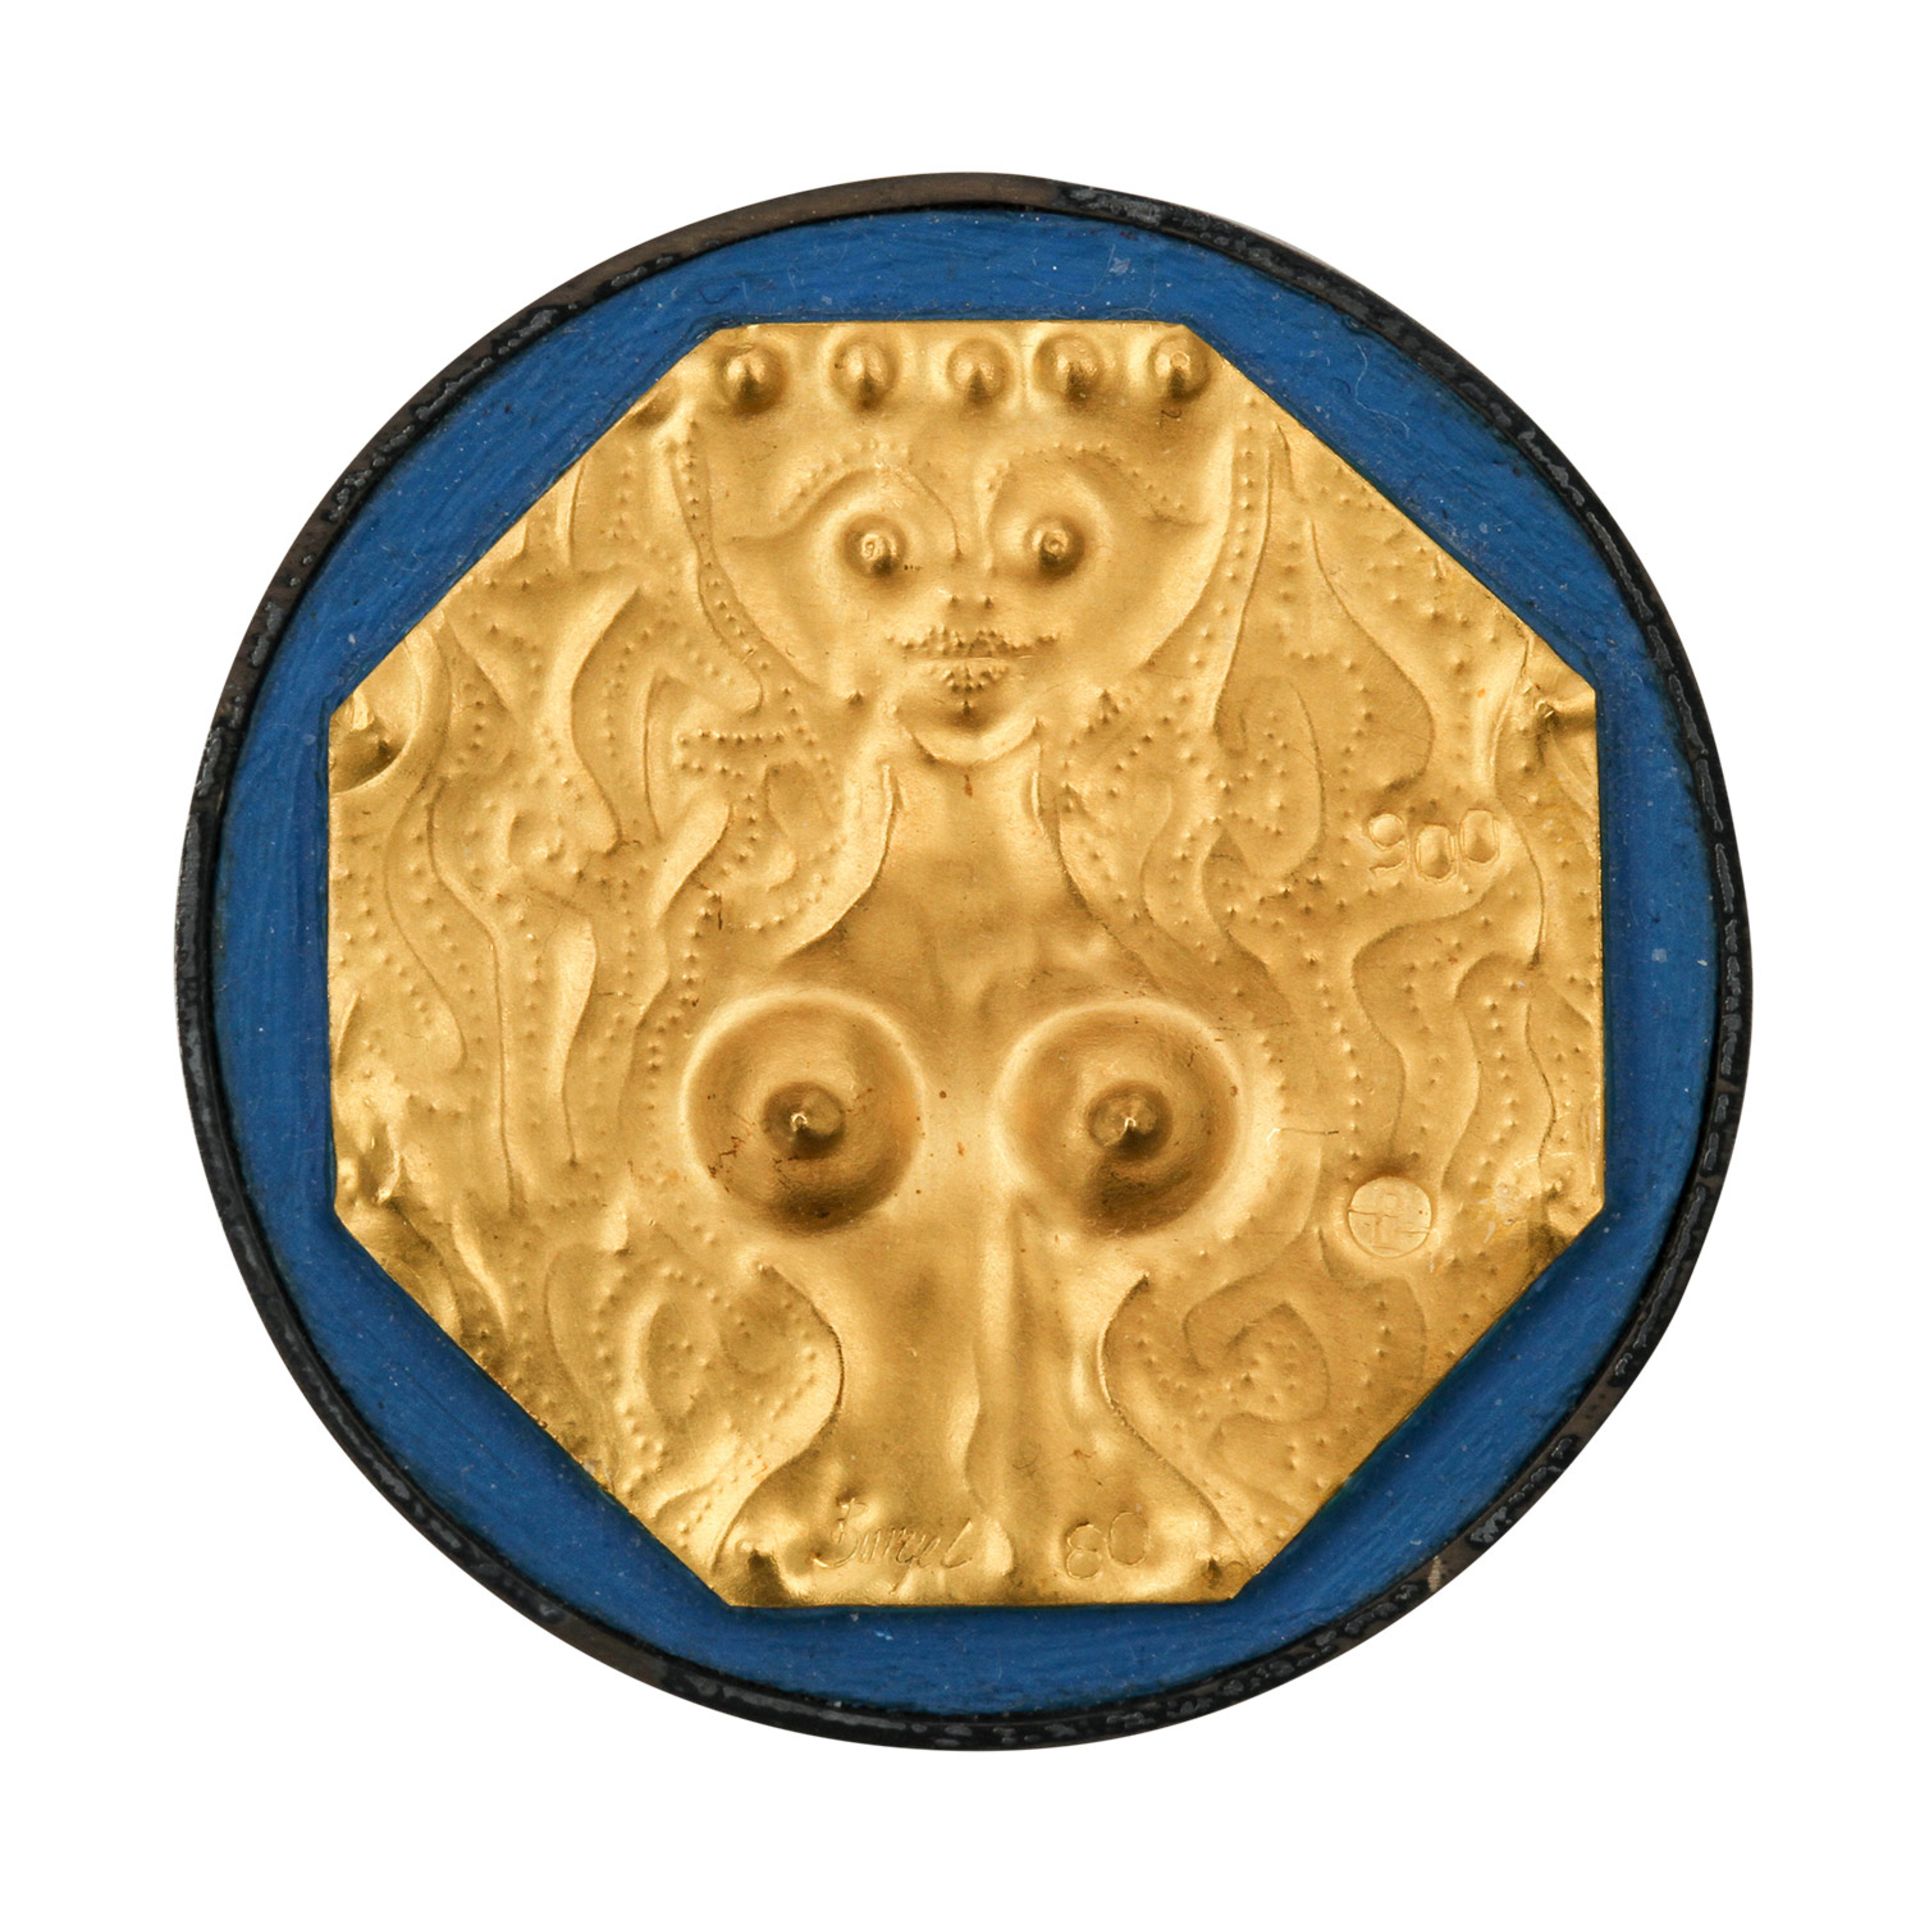 Goldminiatur "Fee" (1980) von E. BURGEL,Gold 900, Silber, getrieben + ziseliert, auf Acryl, mit - Image 2 of 5